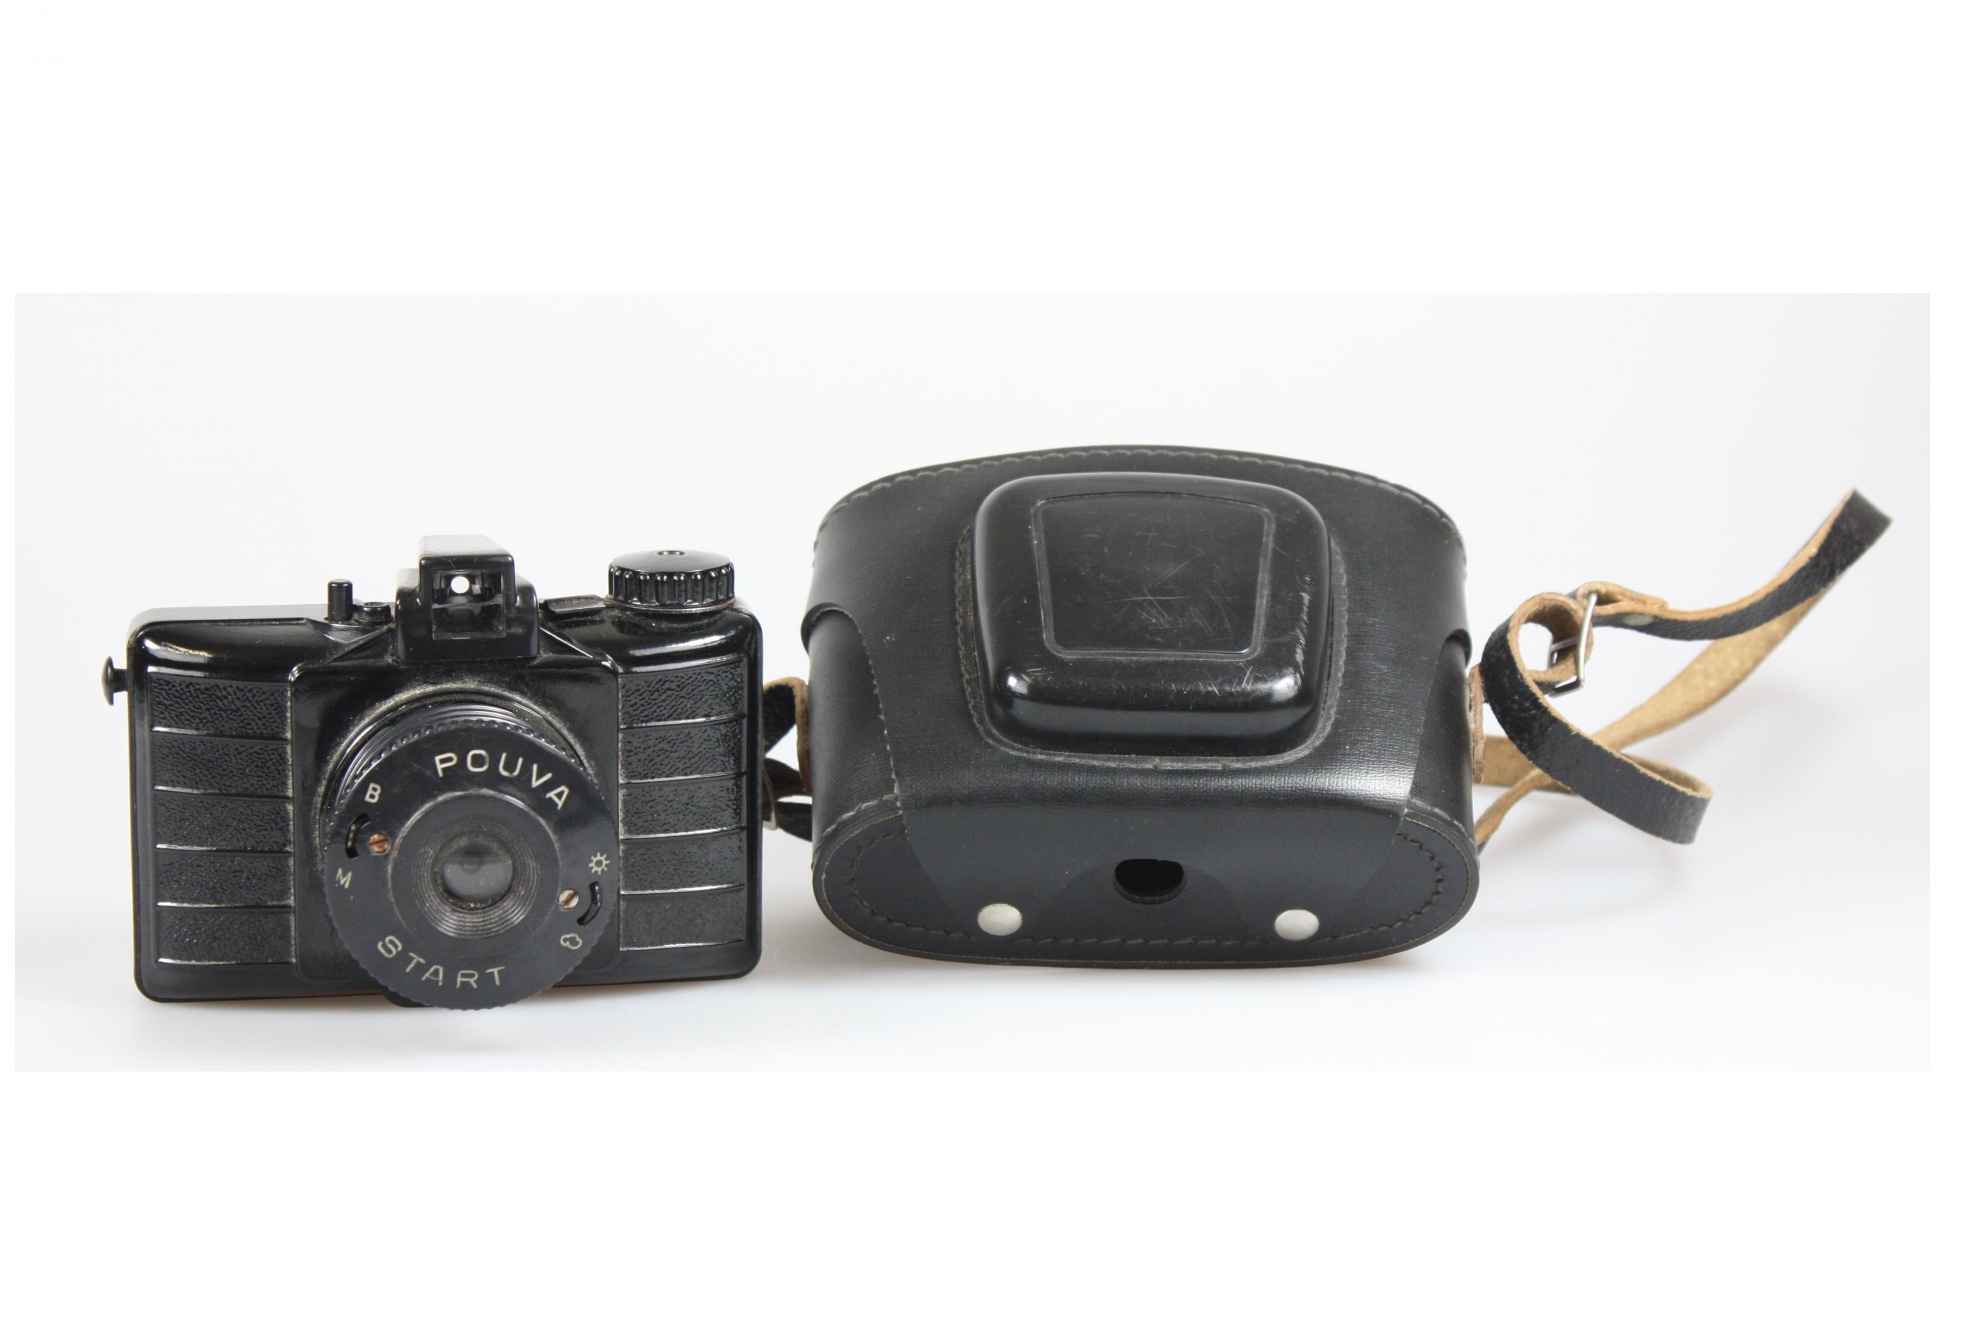 Kamera, Pouva Start, mit schwarzer Tasche (Museum Wolmirstedt RR-F)